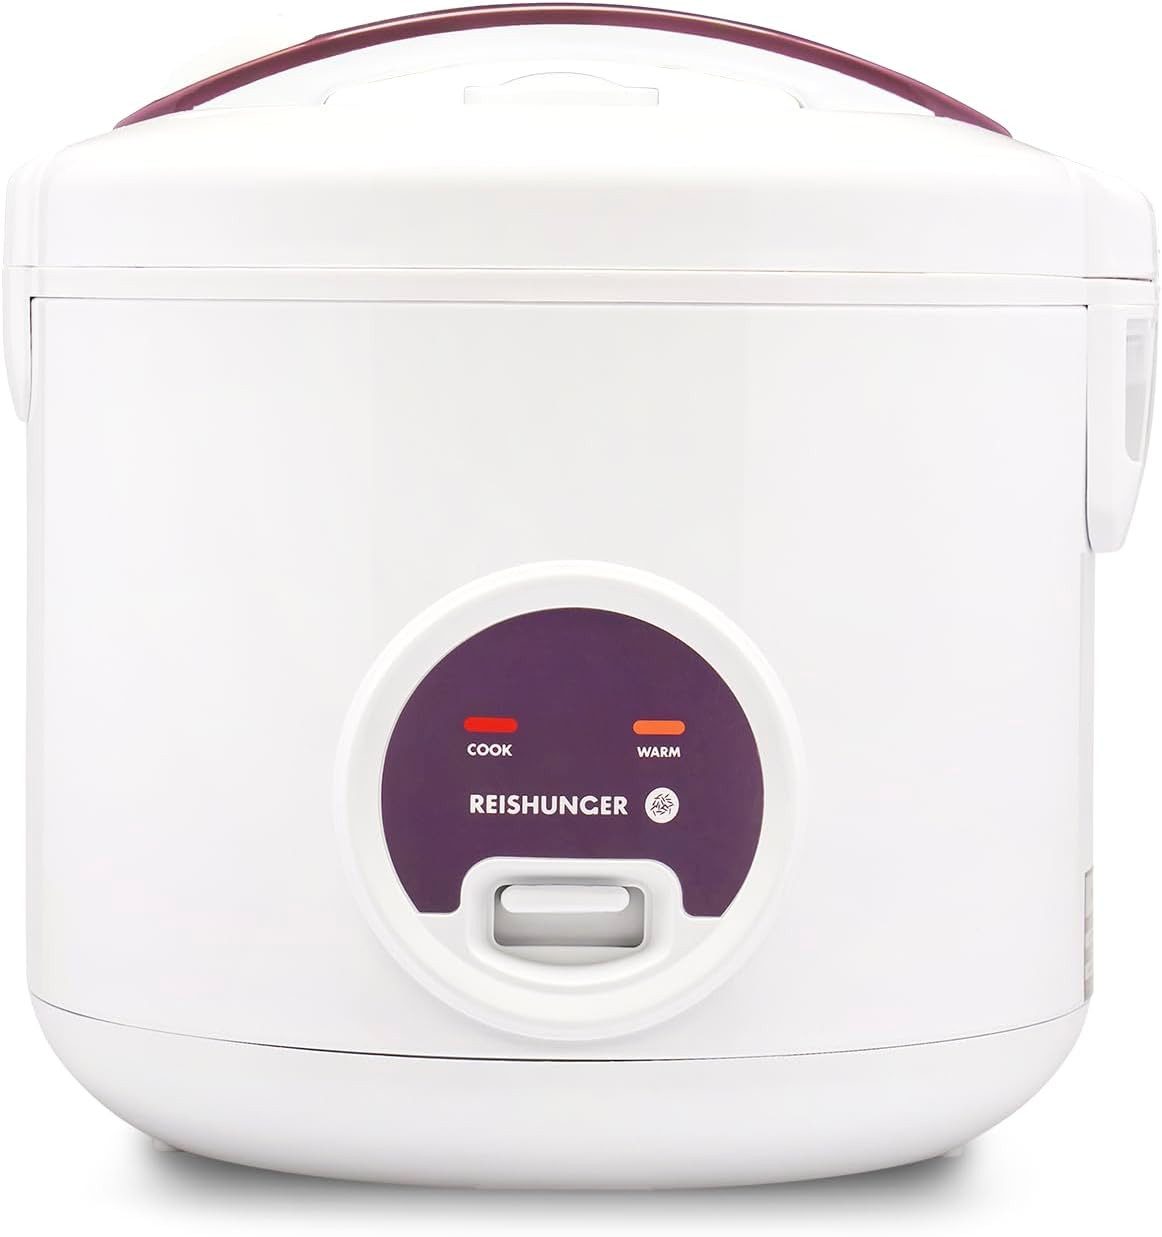 Reishunger Reiskocher - Reiskocher mit Keramikbeschichtung, 1,8 L, 700,00 W, Mit Dampfgarfunktion & Warmhaltefunktion